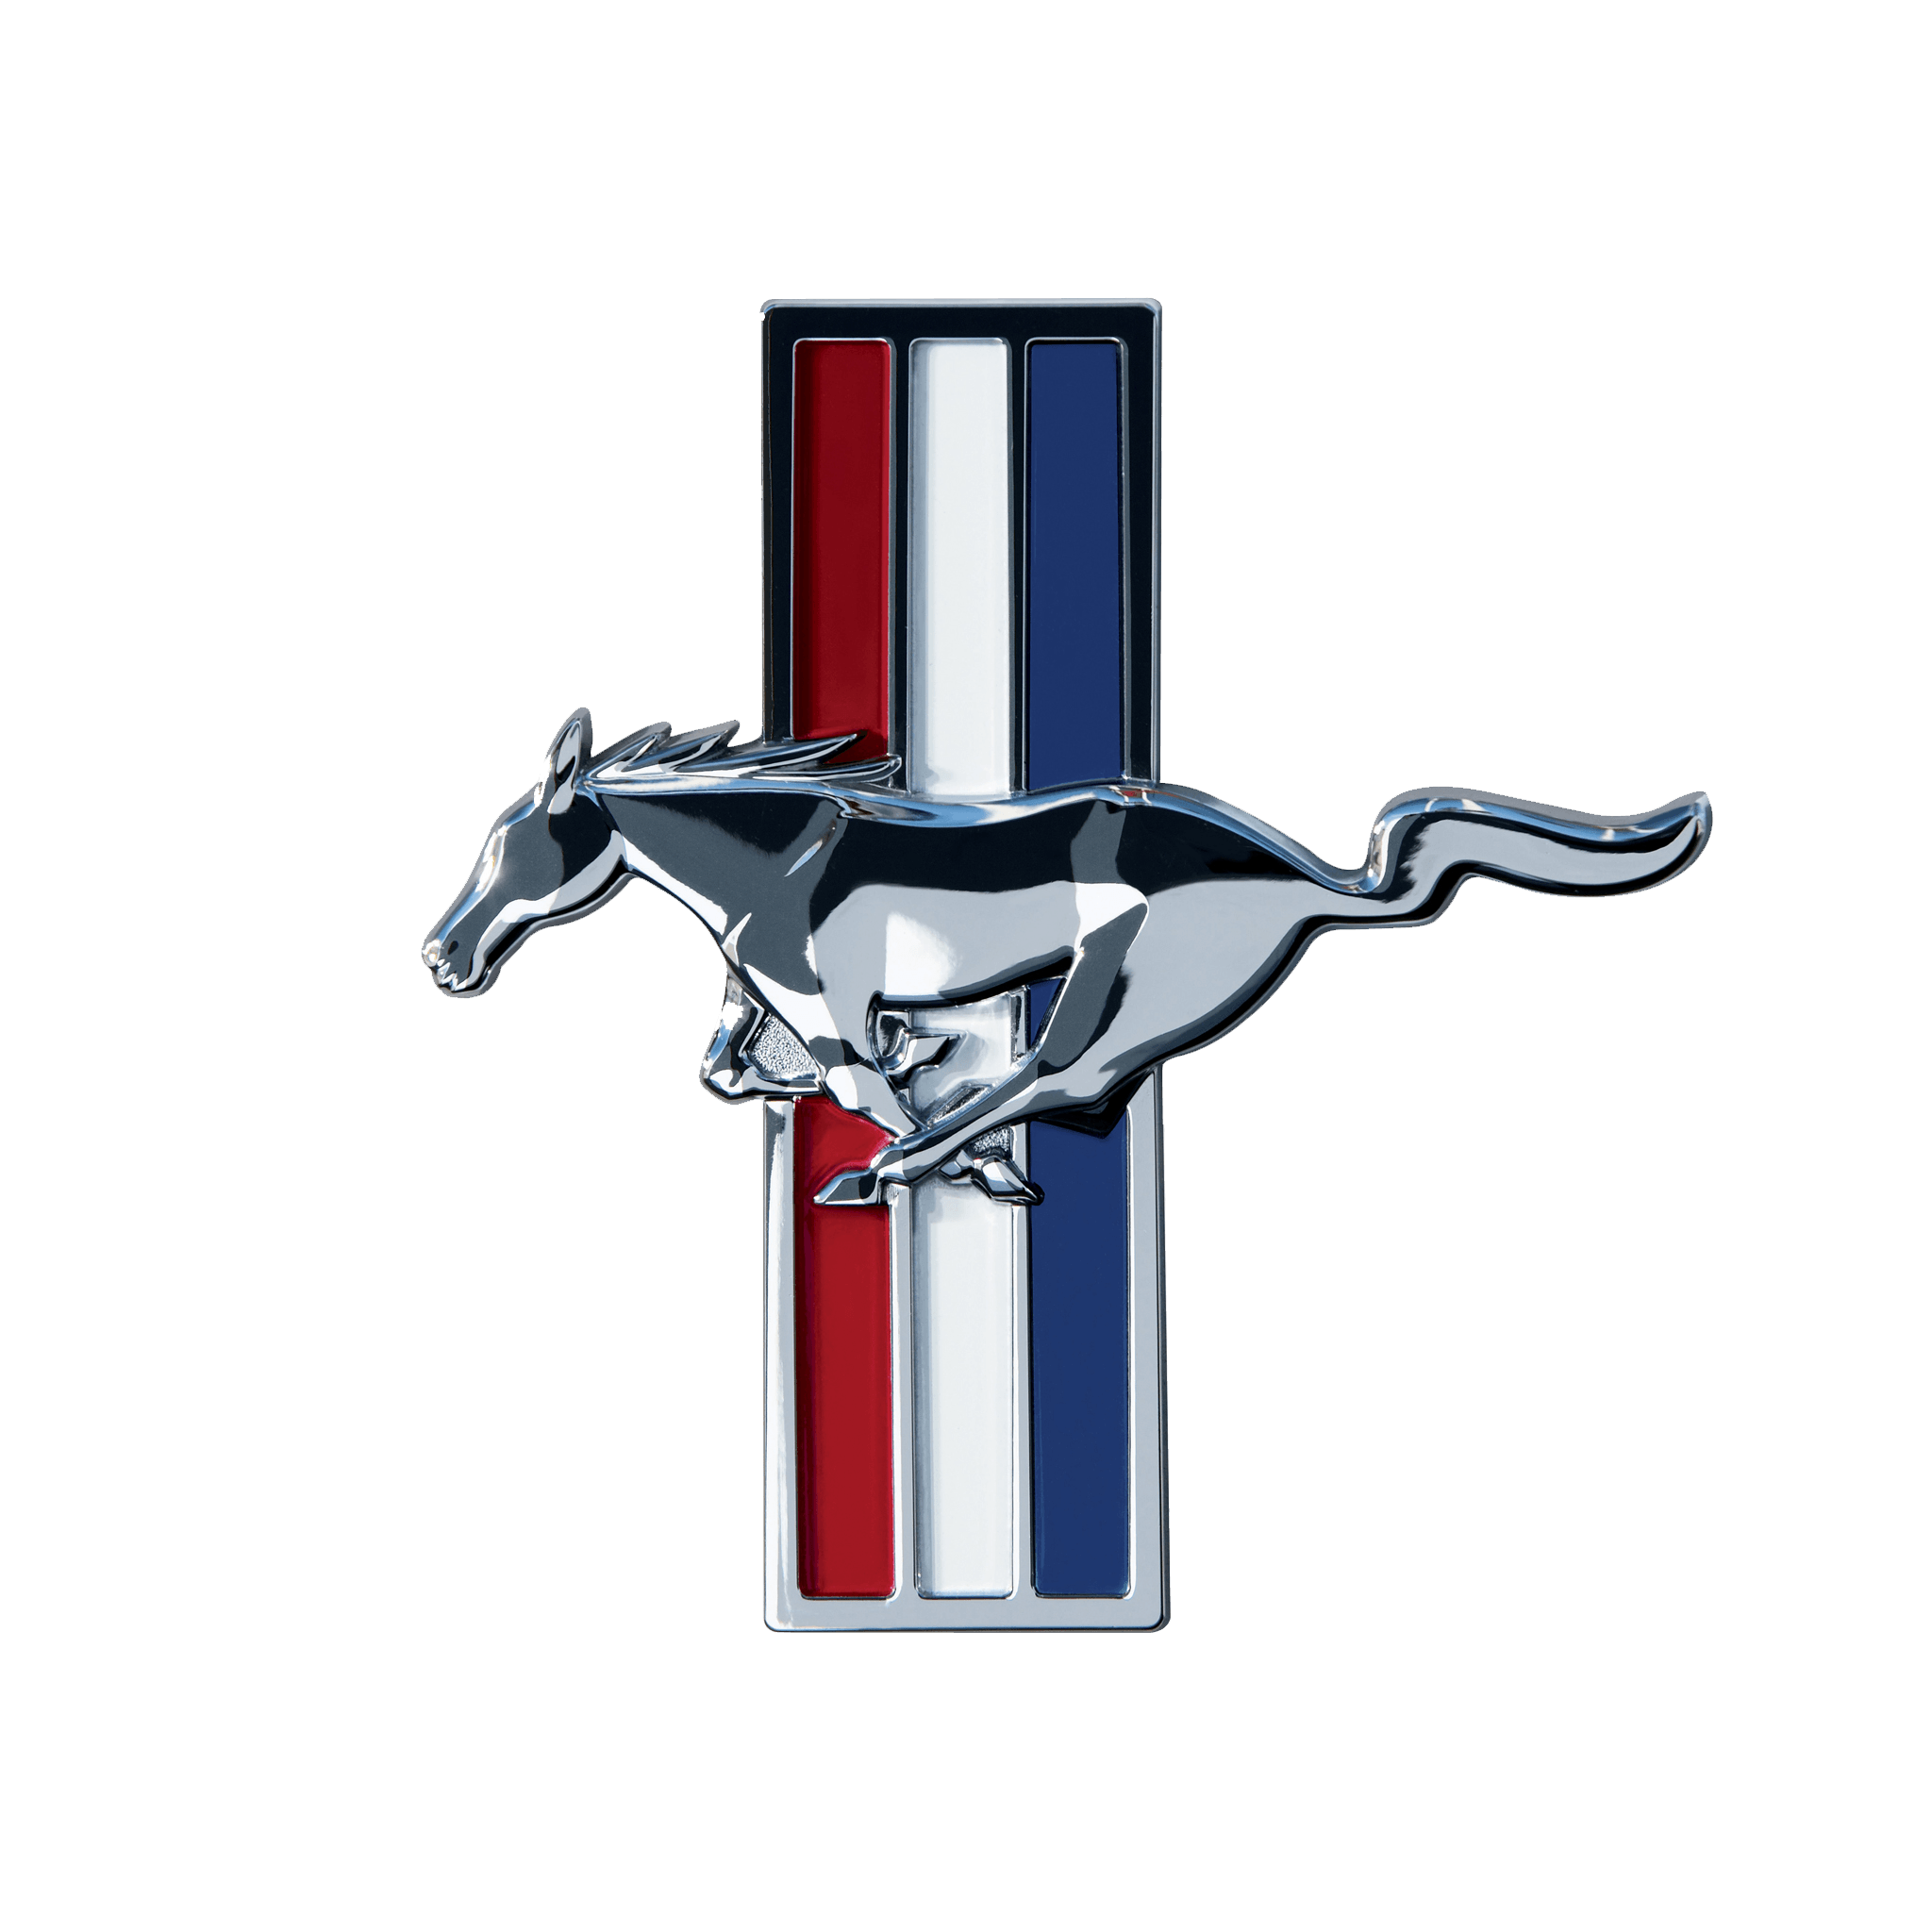 Mustang Logo - Mustang Logo, Meaning, Information | Carlogos.org